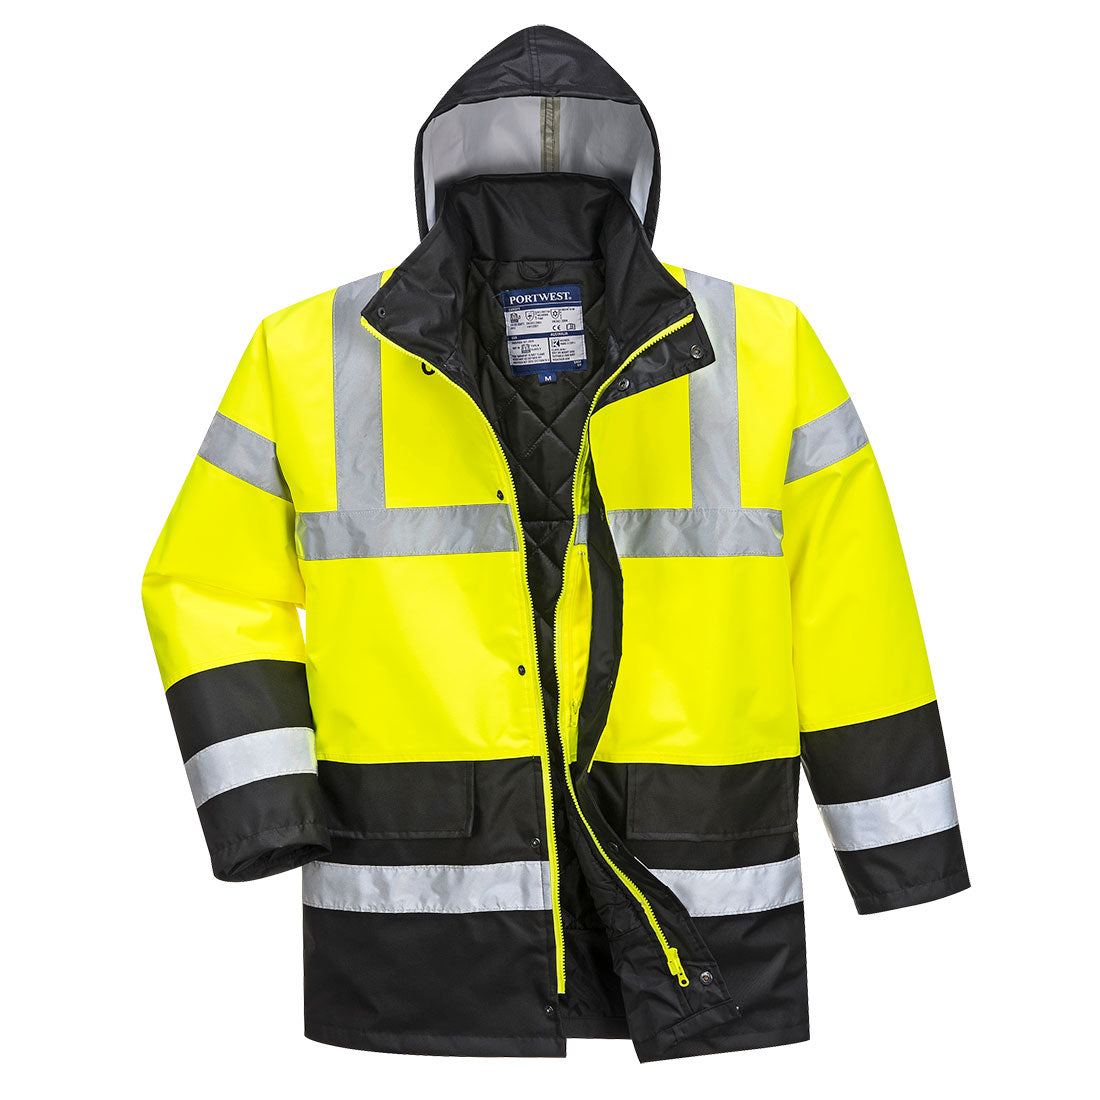 Portwest S466 Hi Vis Contrast Traffic Jacket 1#colour_yellow-black 2#colour_yellow-black